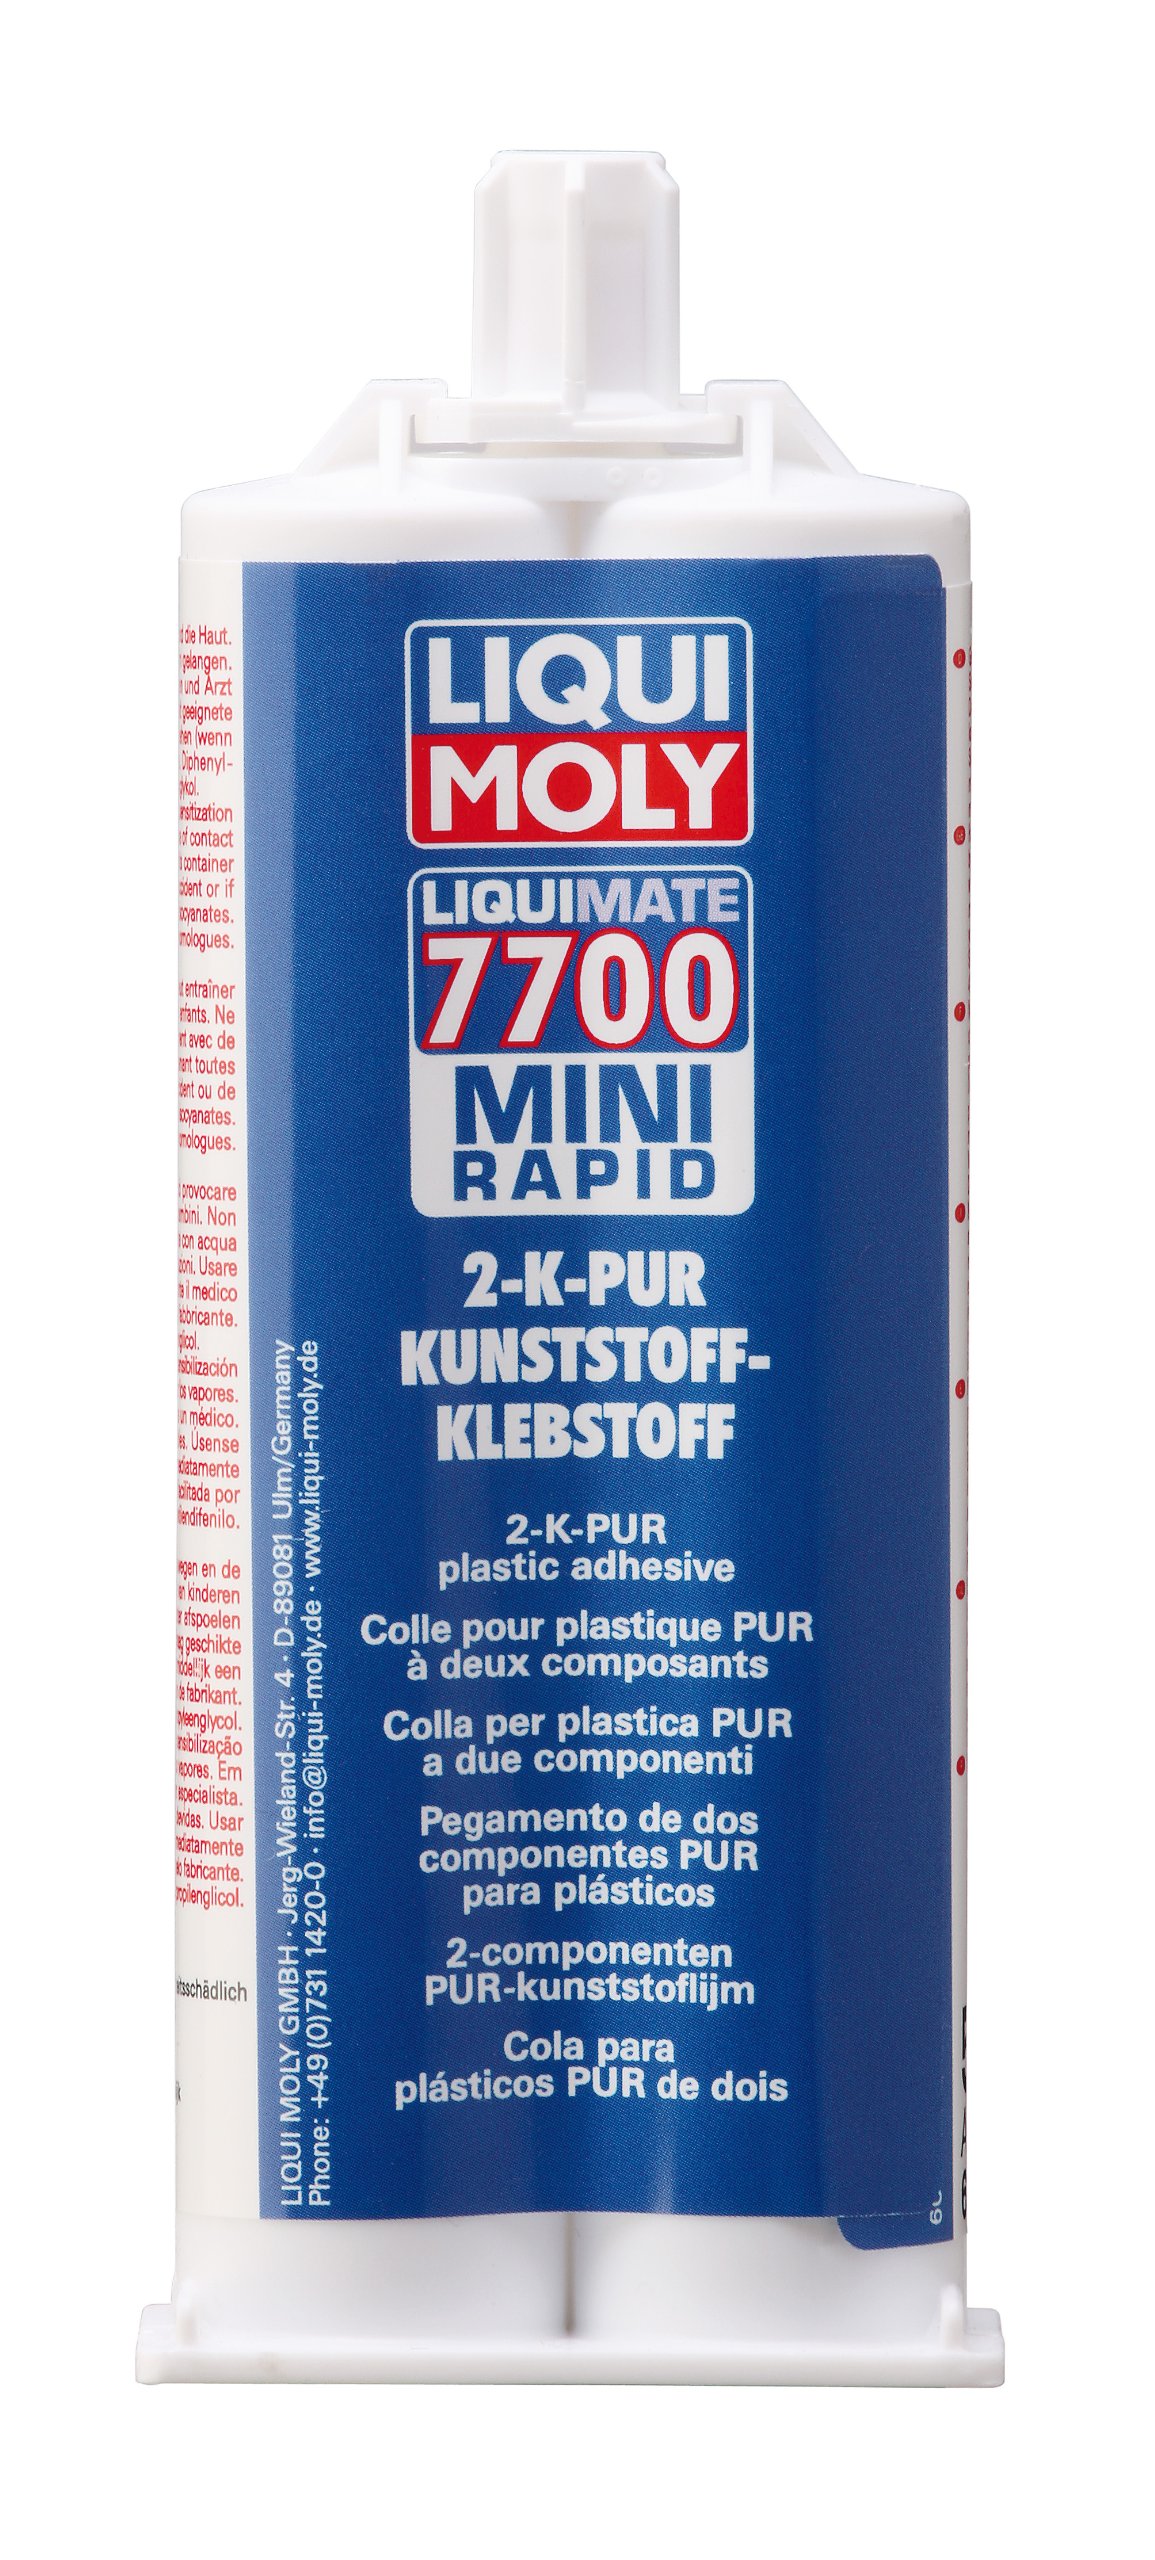 LIQUI MOLY Liquimate 7700 Mini Rapid Kartusche | 50 ml | Klebstoff | Art.-Nr.: 6126 von Liqui Moly